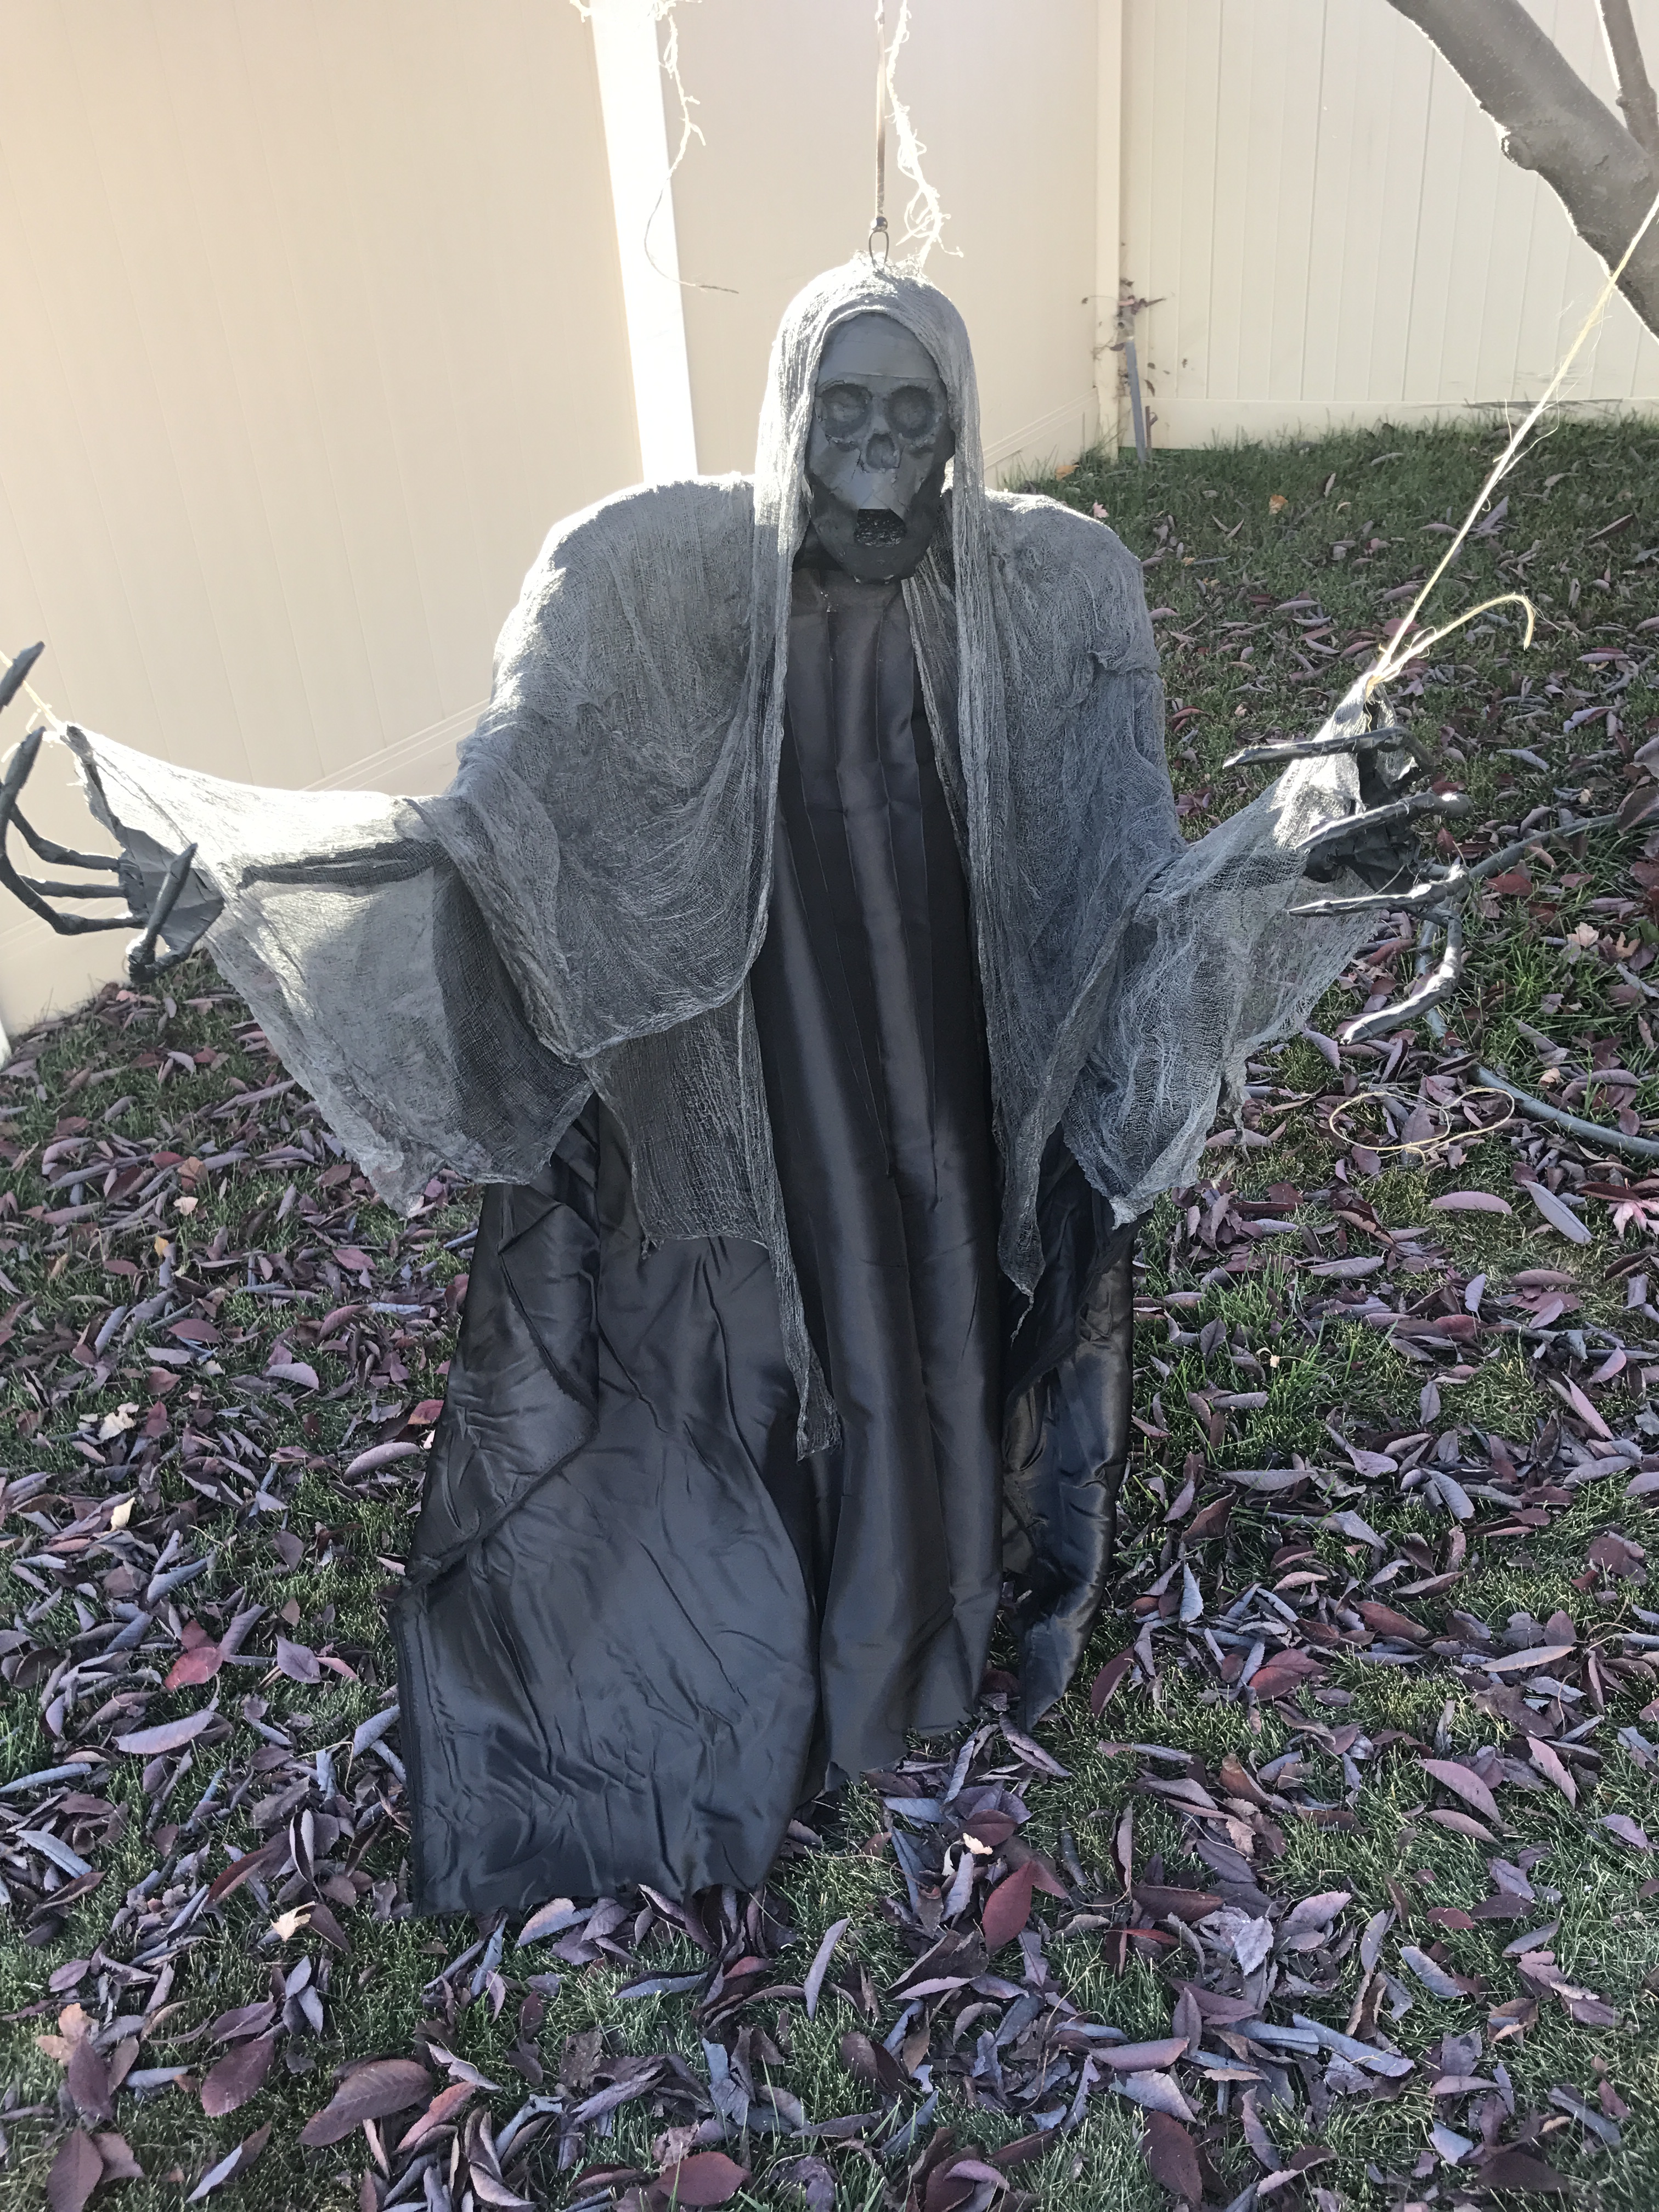 160 IMG_5360 ... 10-18-17 - Alyssa's halloween Dementor